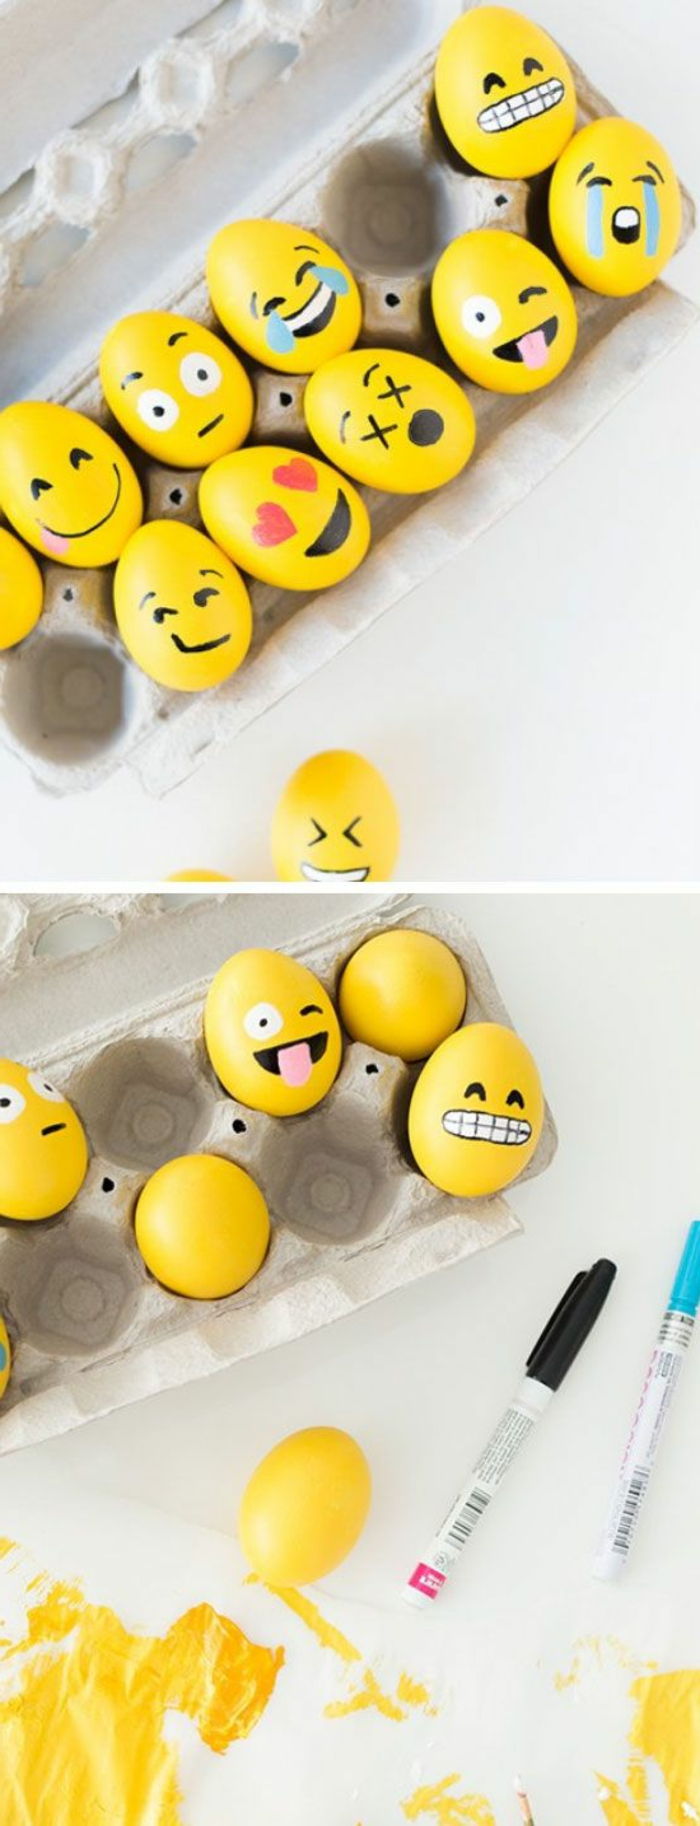 Mal ideer til gule påskeegg med emojis - forskjellige utseende